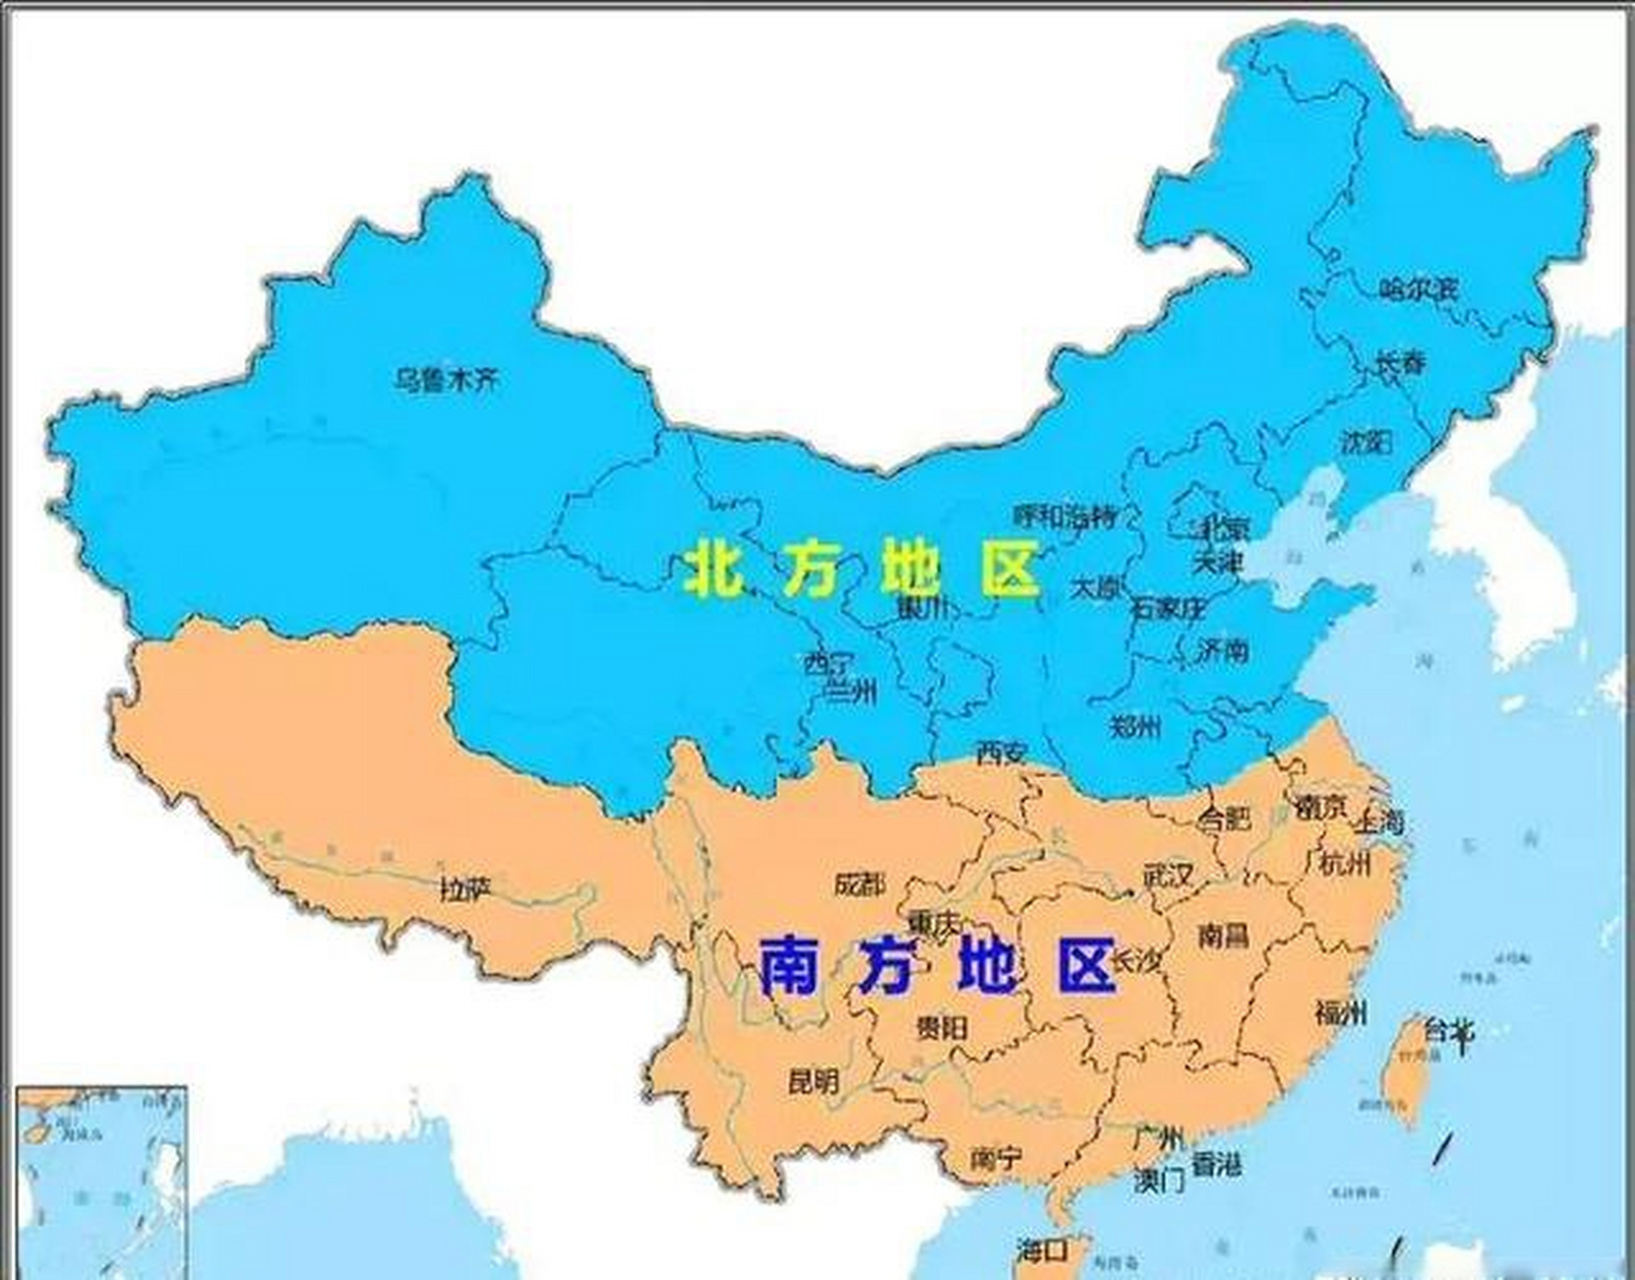 最标准的中国南北方划分 西北,华北,东北属于北方,西南,东南属于南方